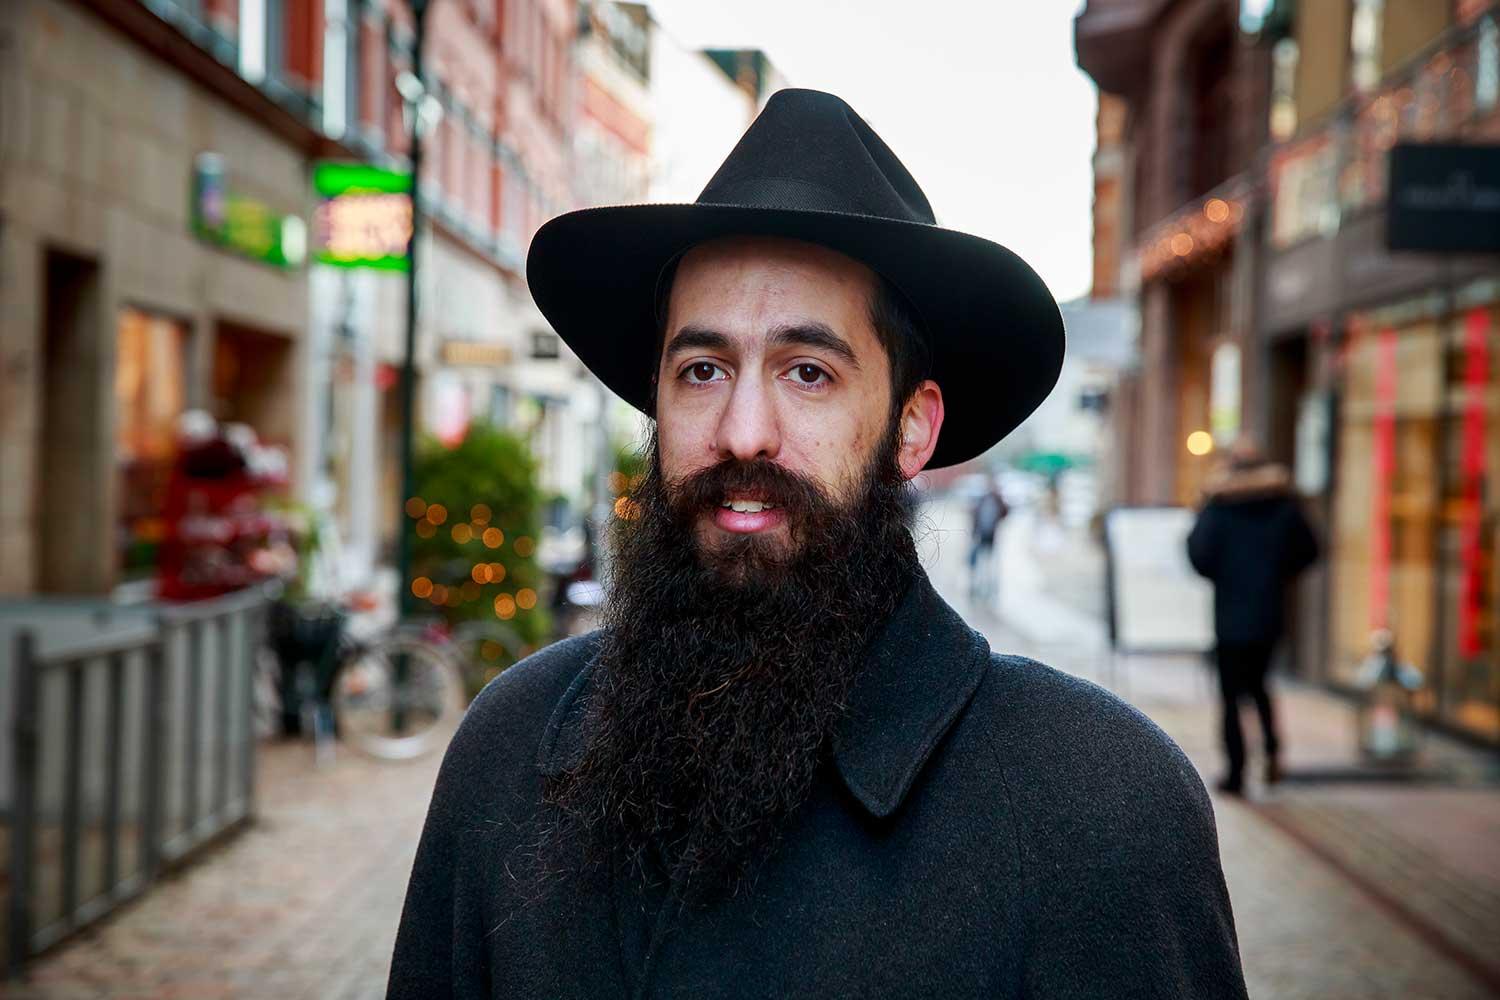 Rabbinen i Malmös judiska församling, Shneur Kesselman, attackerades av okända i går kväll. – De skrek ”fucking judar”, säger han.